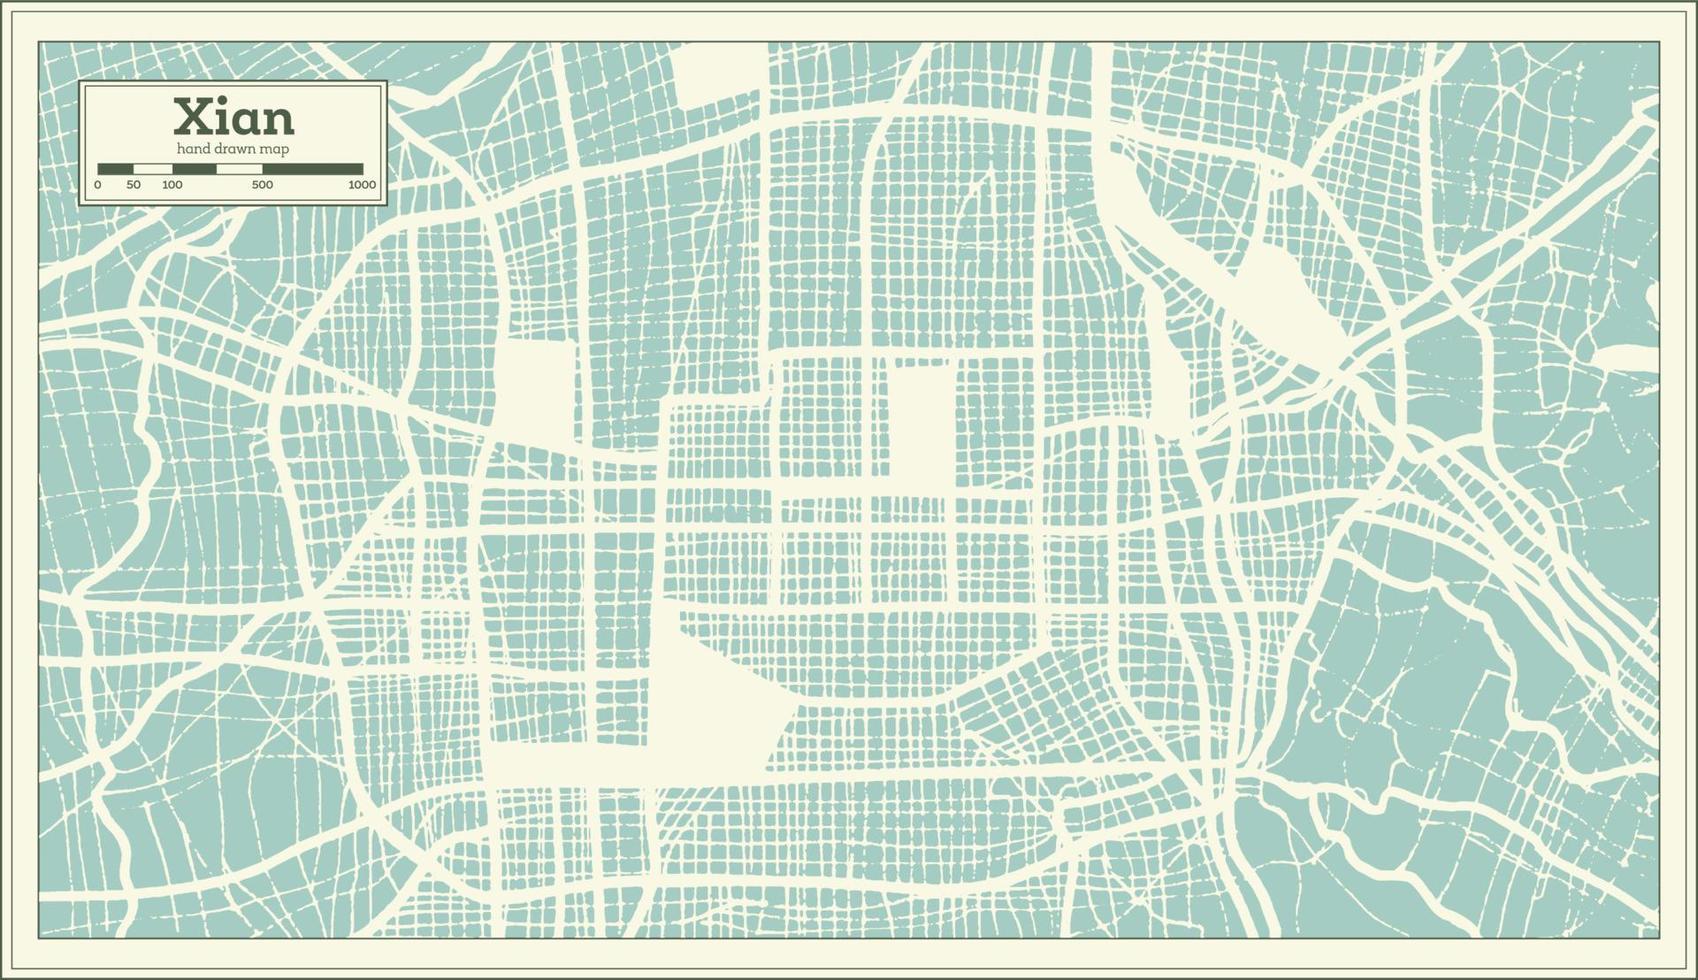 plan de la ville de xian en chine dans un style rétro. carte muette. vecteur